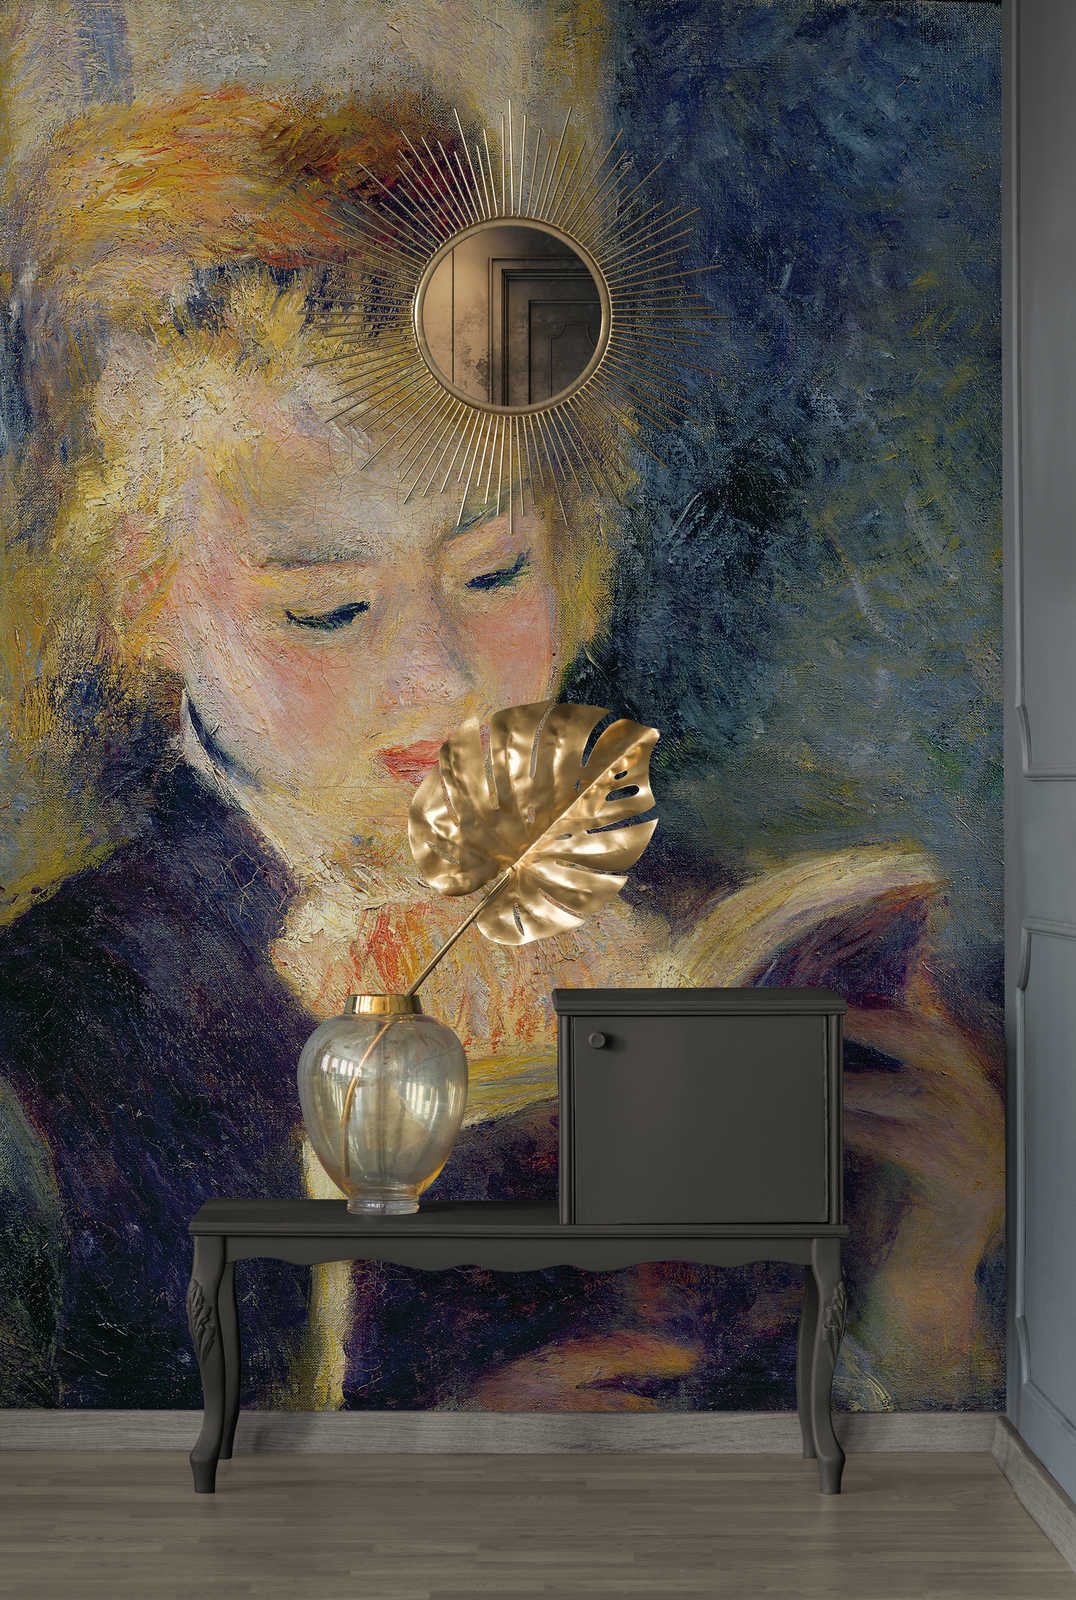             Fototapete "Lesendes Mädchen" von Pierre Auguste Renoir
        